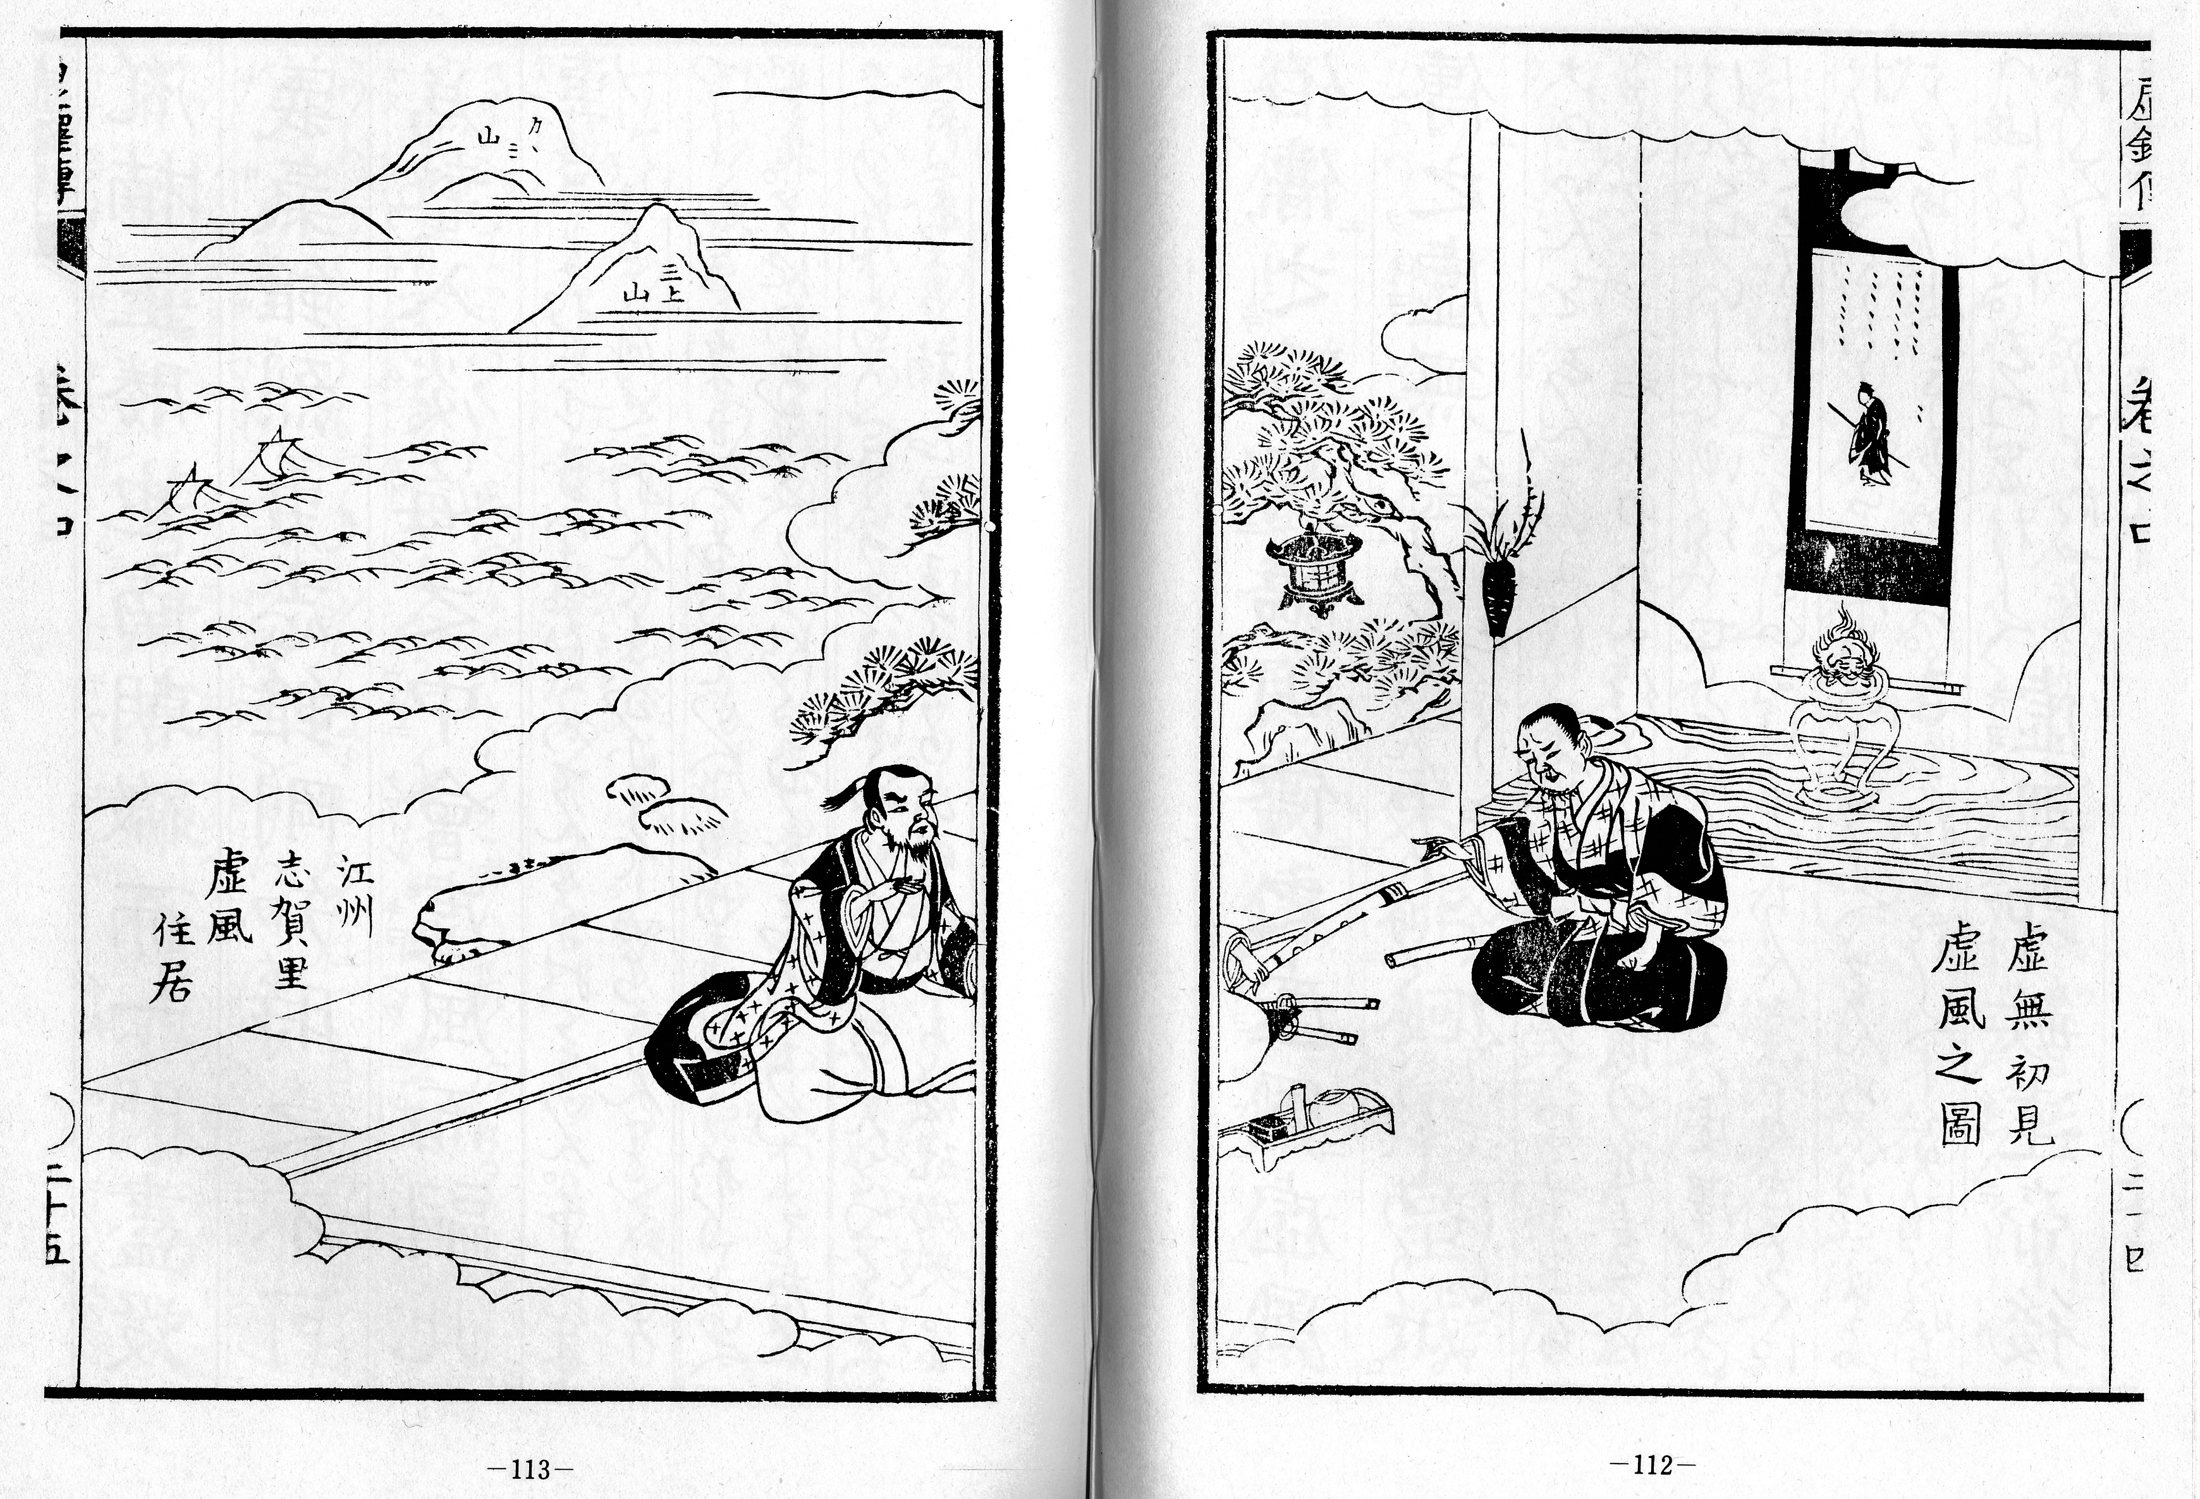 Kyotaku denki kokujikai illustration pp. 112-113